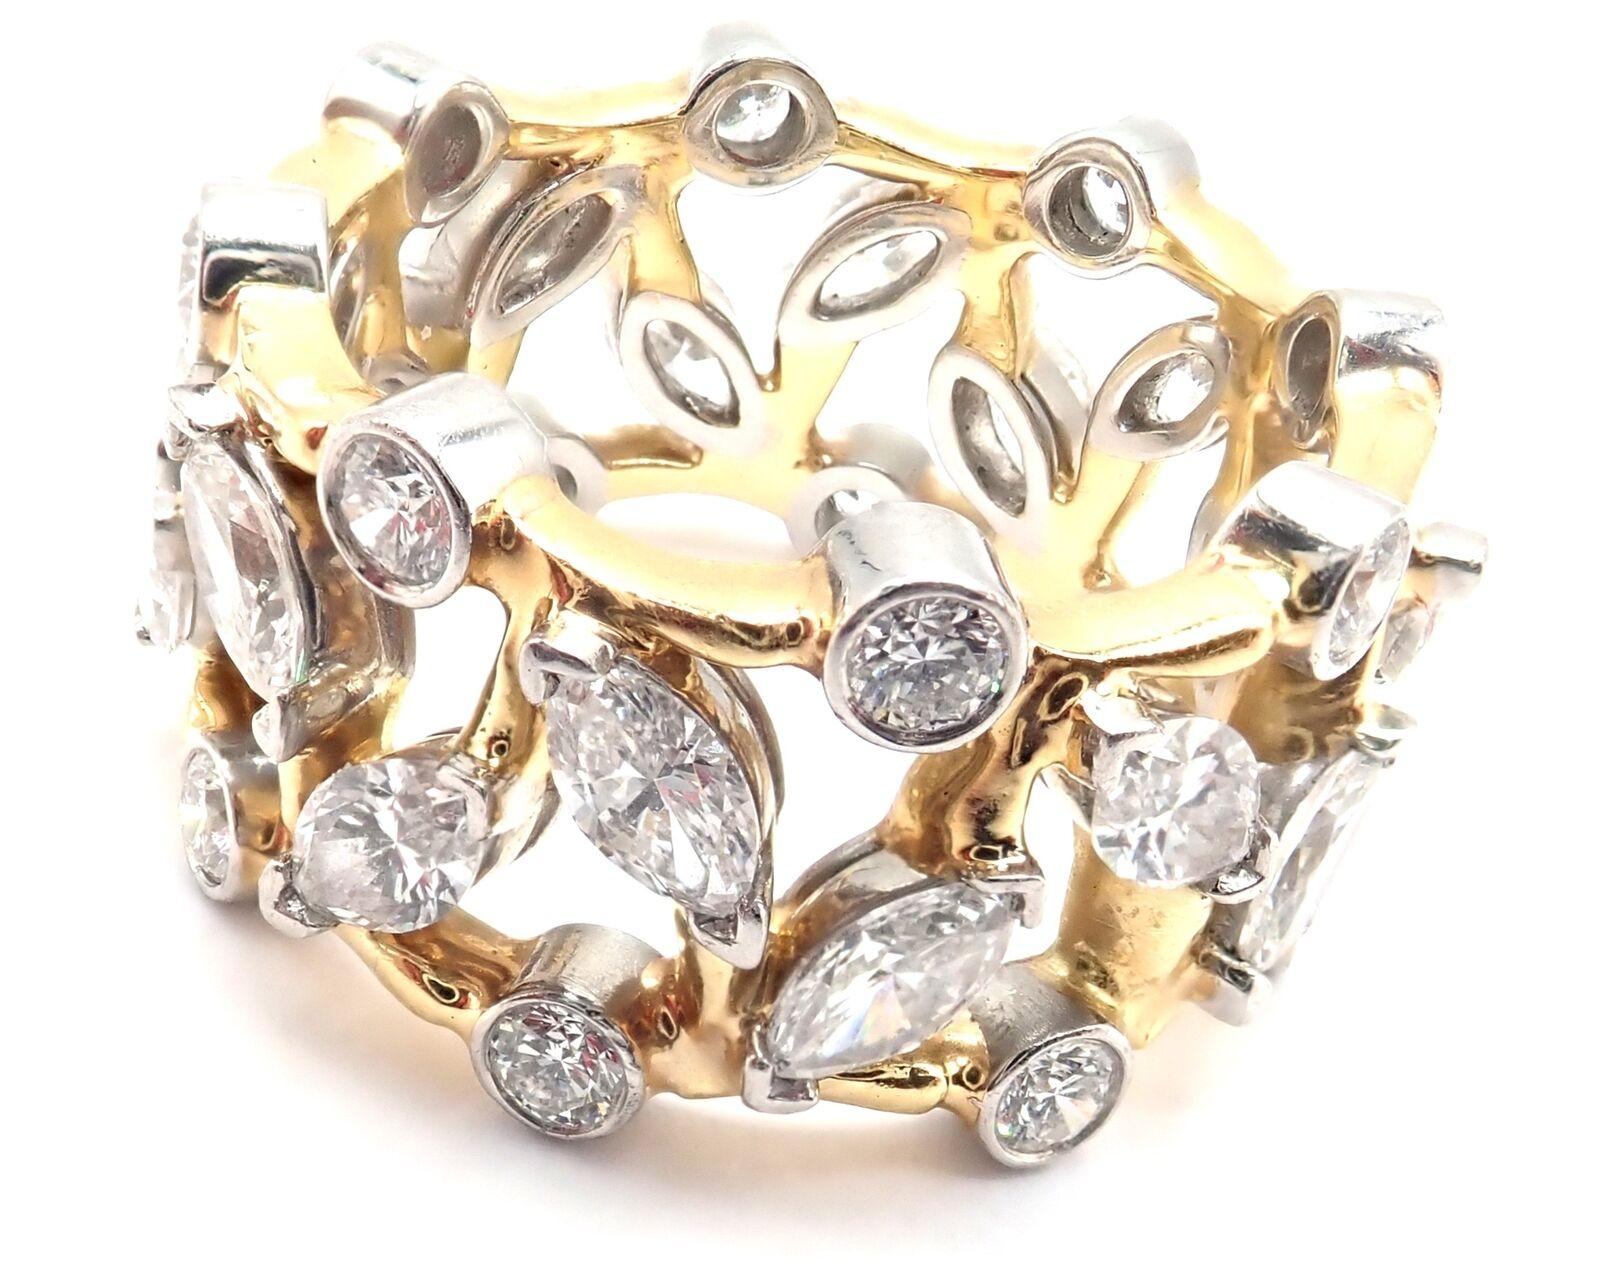 Bague en or jaune 18k et platine avec diamant Vigne Jean Schlumberger conçue pour Tiffany & Co. 
Avec des diamants ronds de taille brillante VS1, couleur E, poids total approximatif de 0,65ct.
Diamants taillés en marquise d'un poids total d'environ